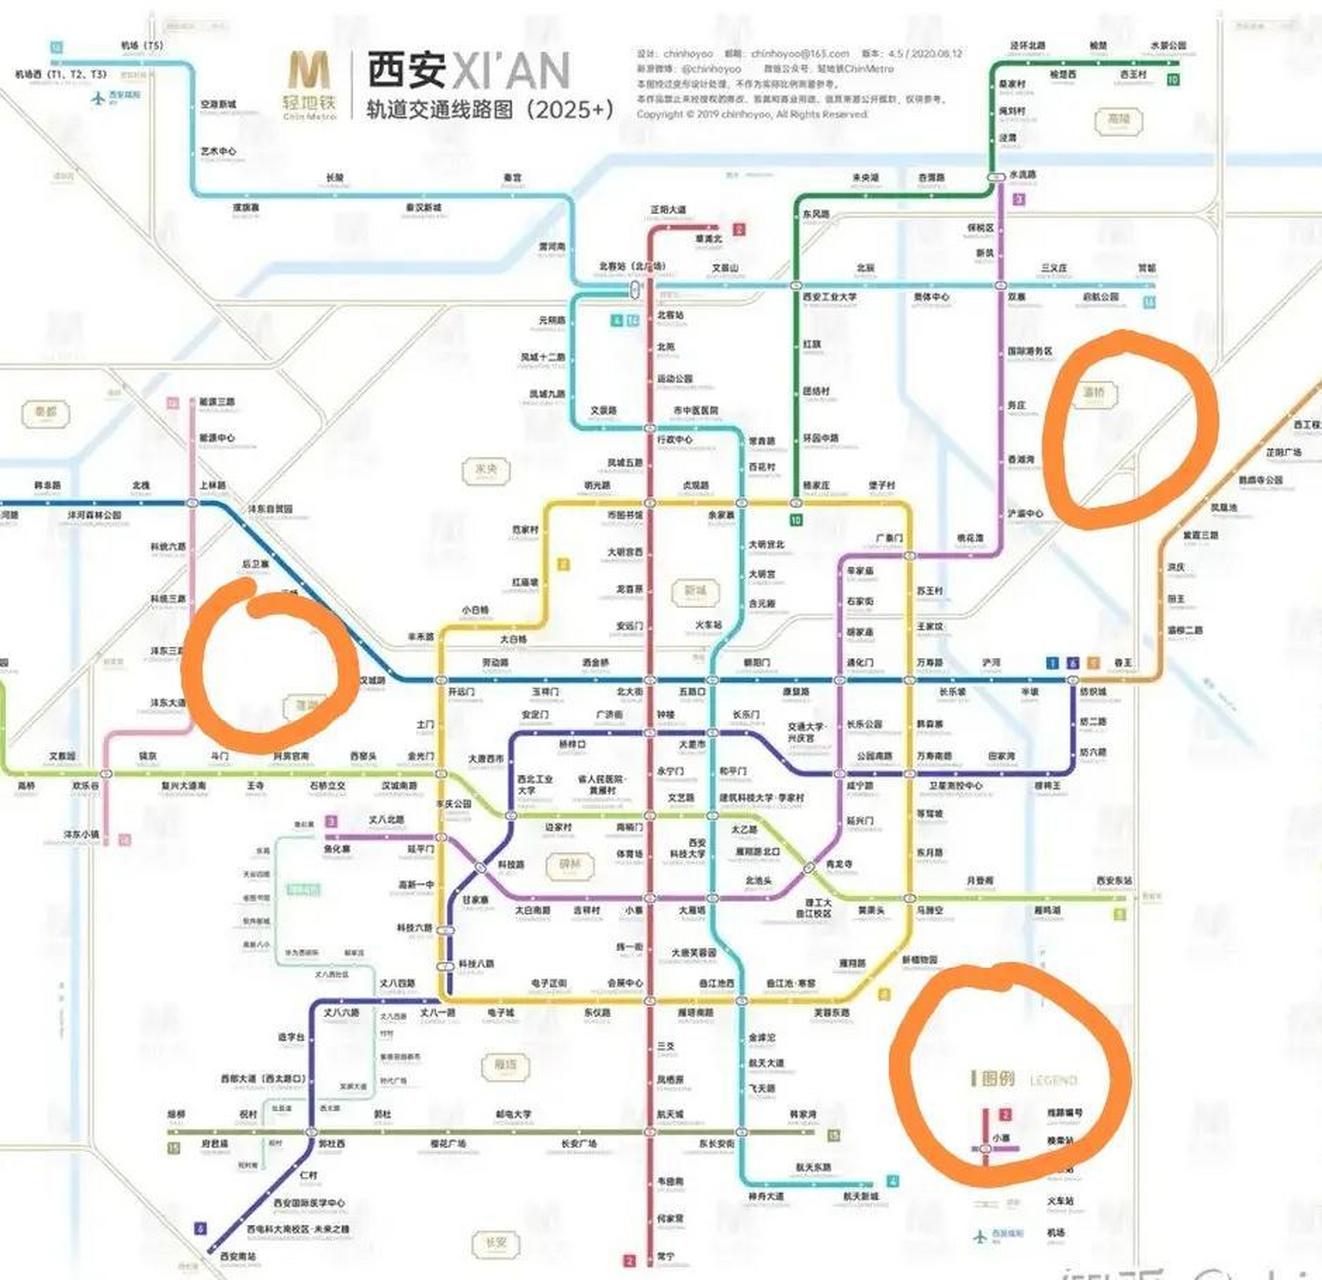 西安地铁规划图 清晰图片